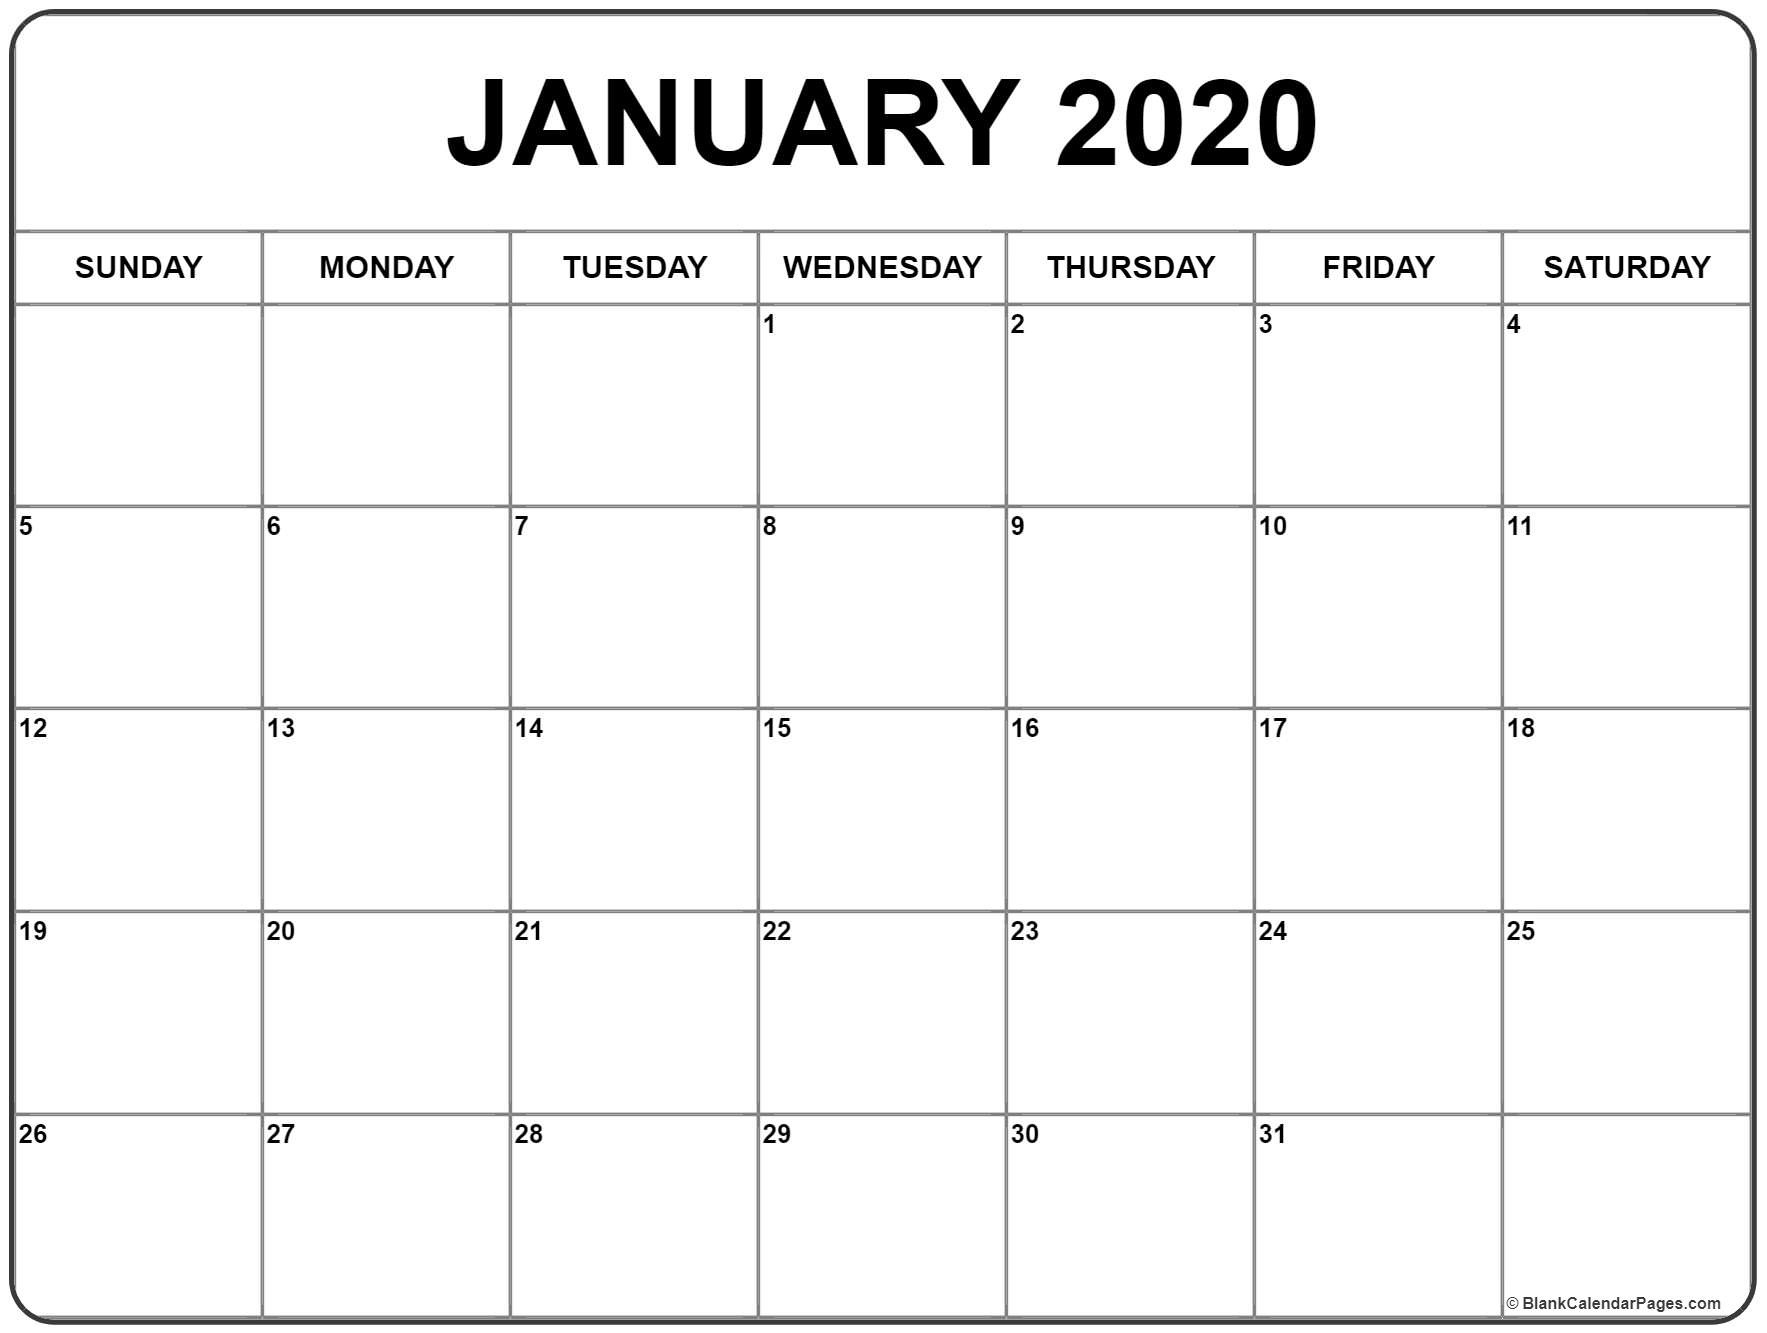 Islamic Calendar 2020 – Printable Week Calendar-2020 Calendar With Islamic Holidays